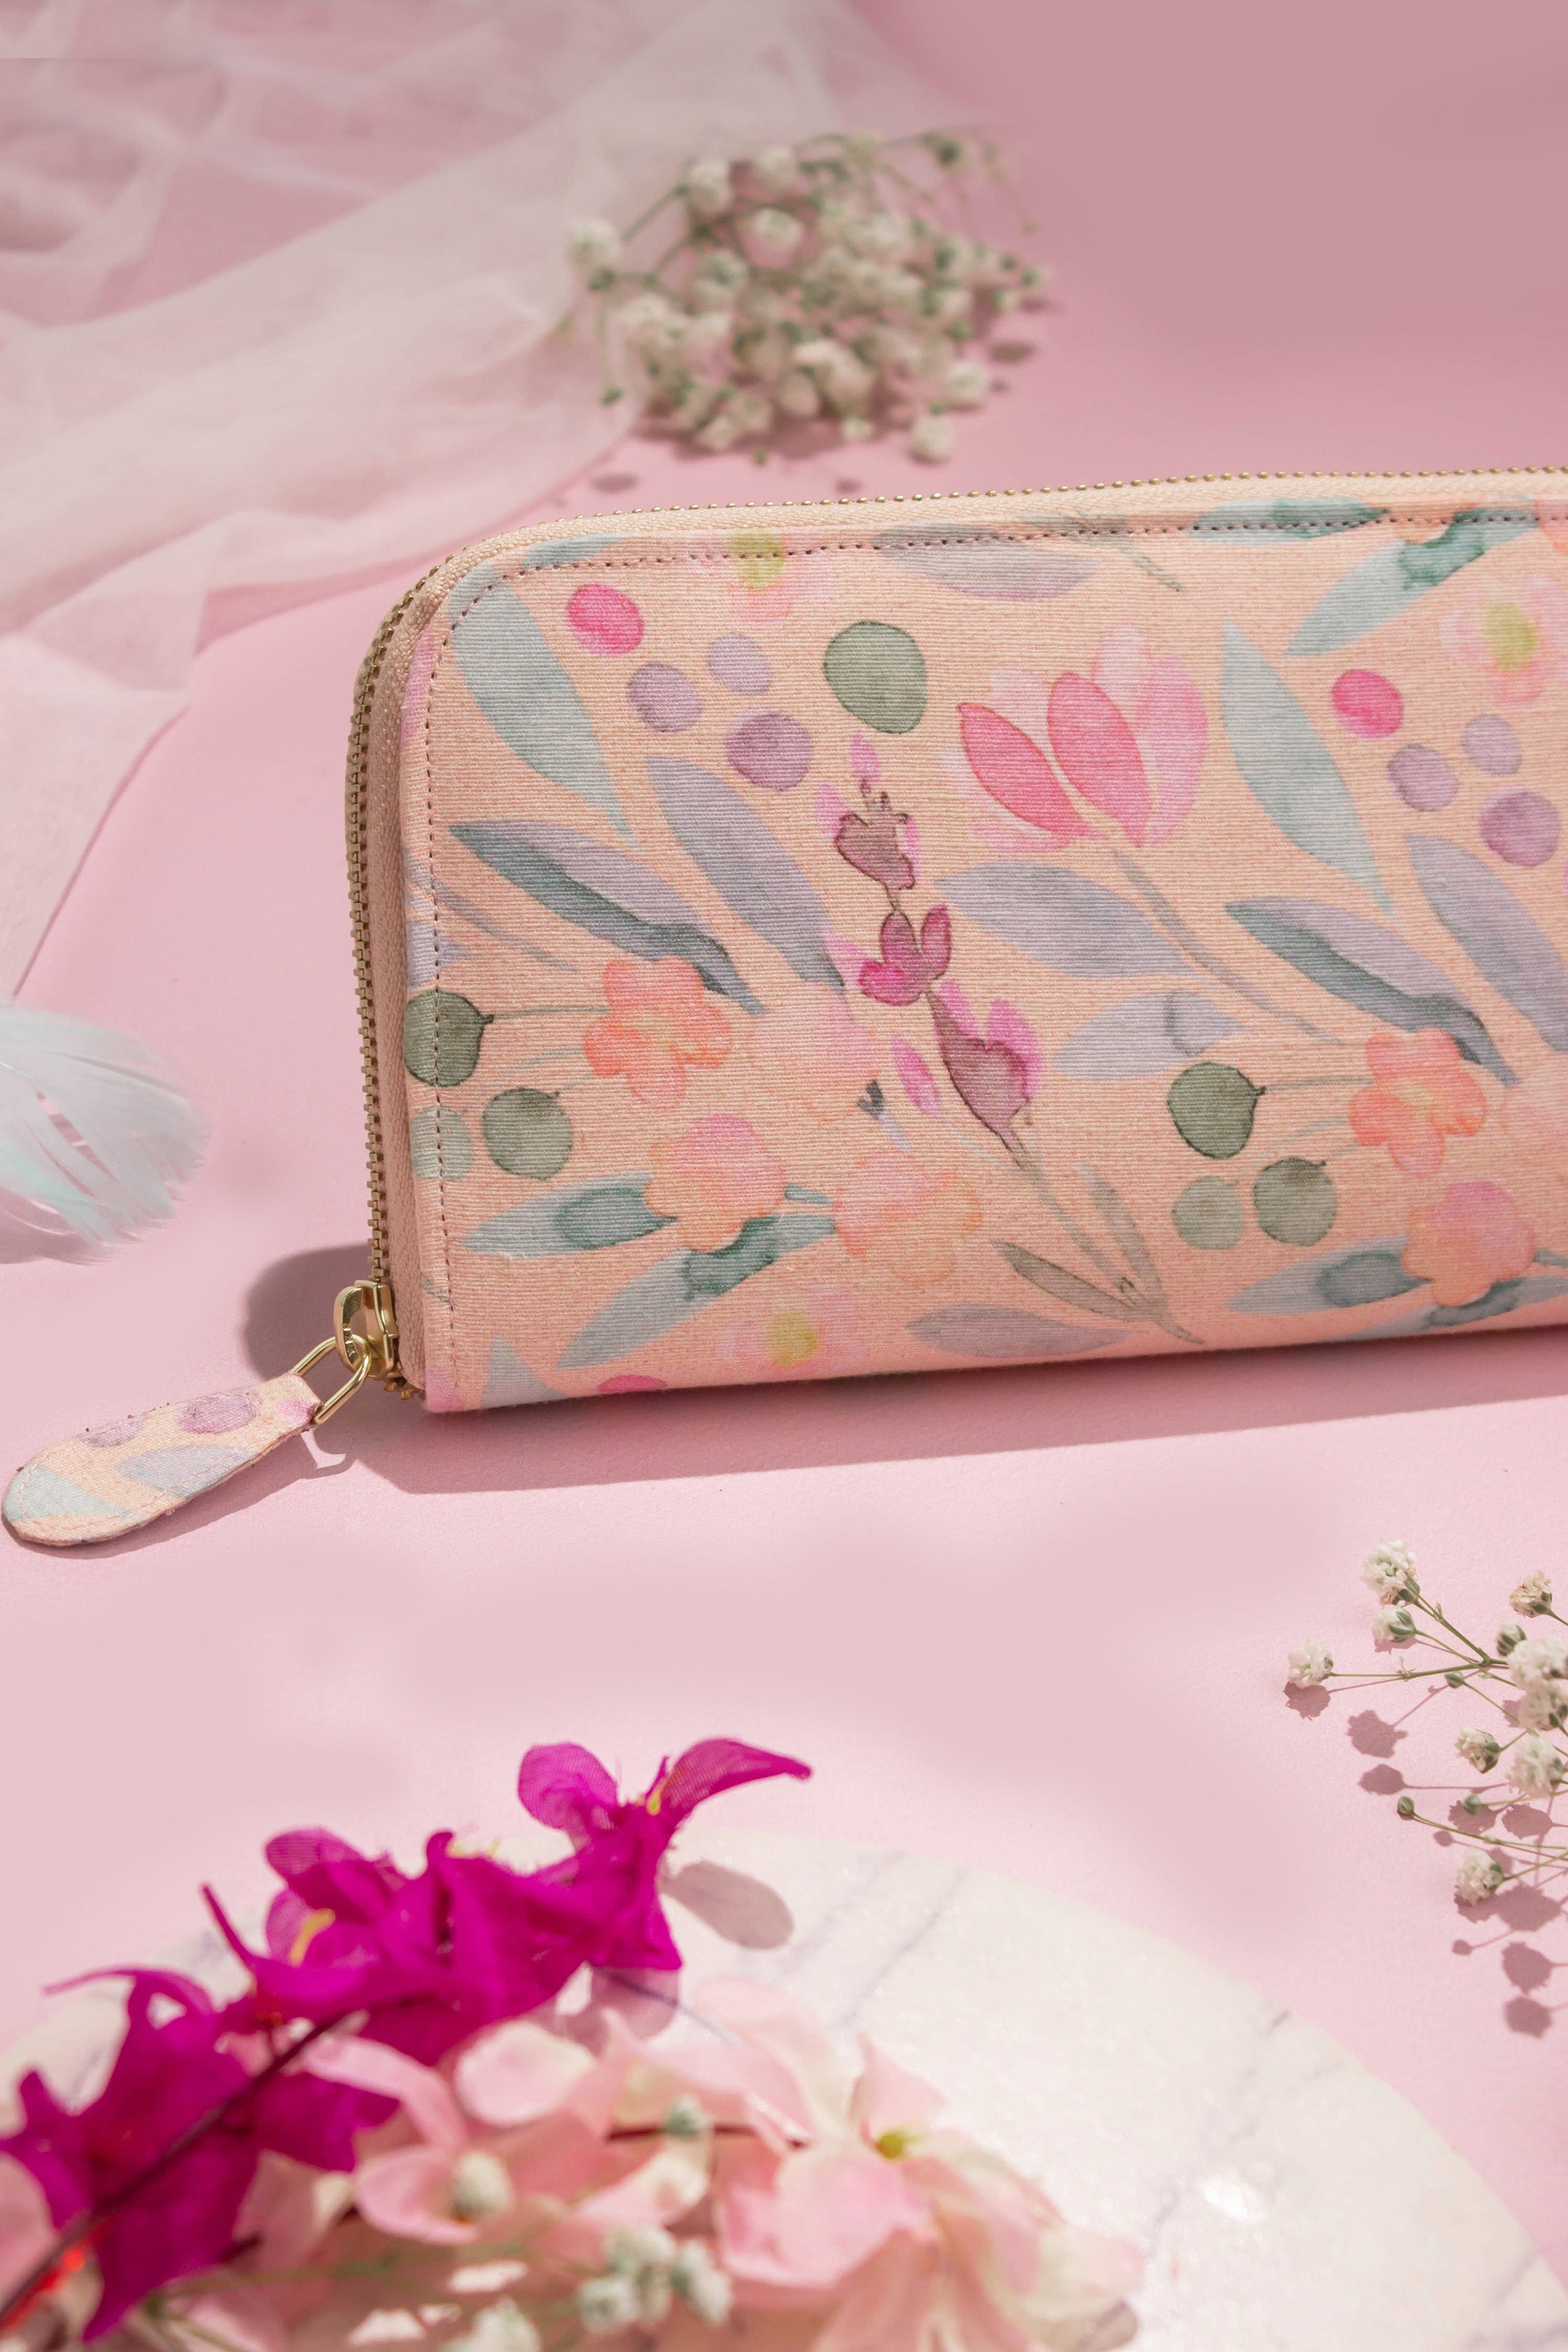 Pink Floral Handbags - Buy Pink Floral Handbags online in India